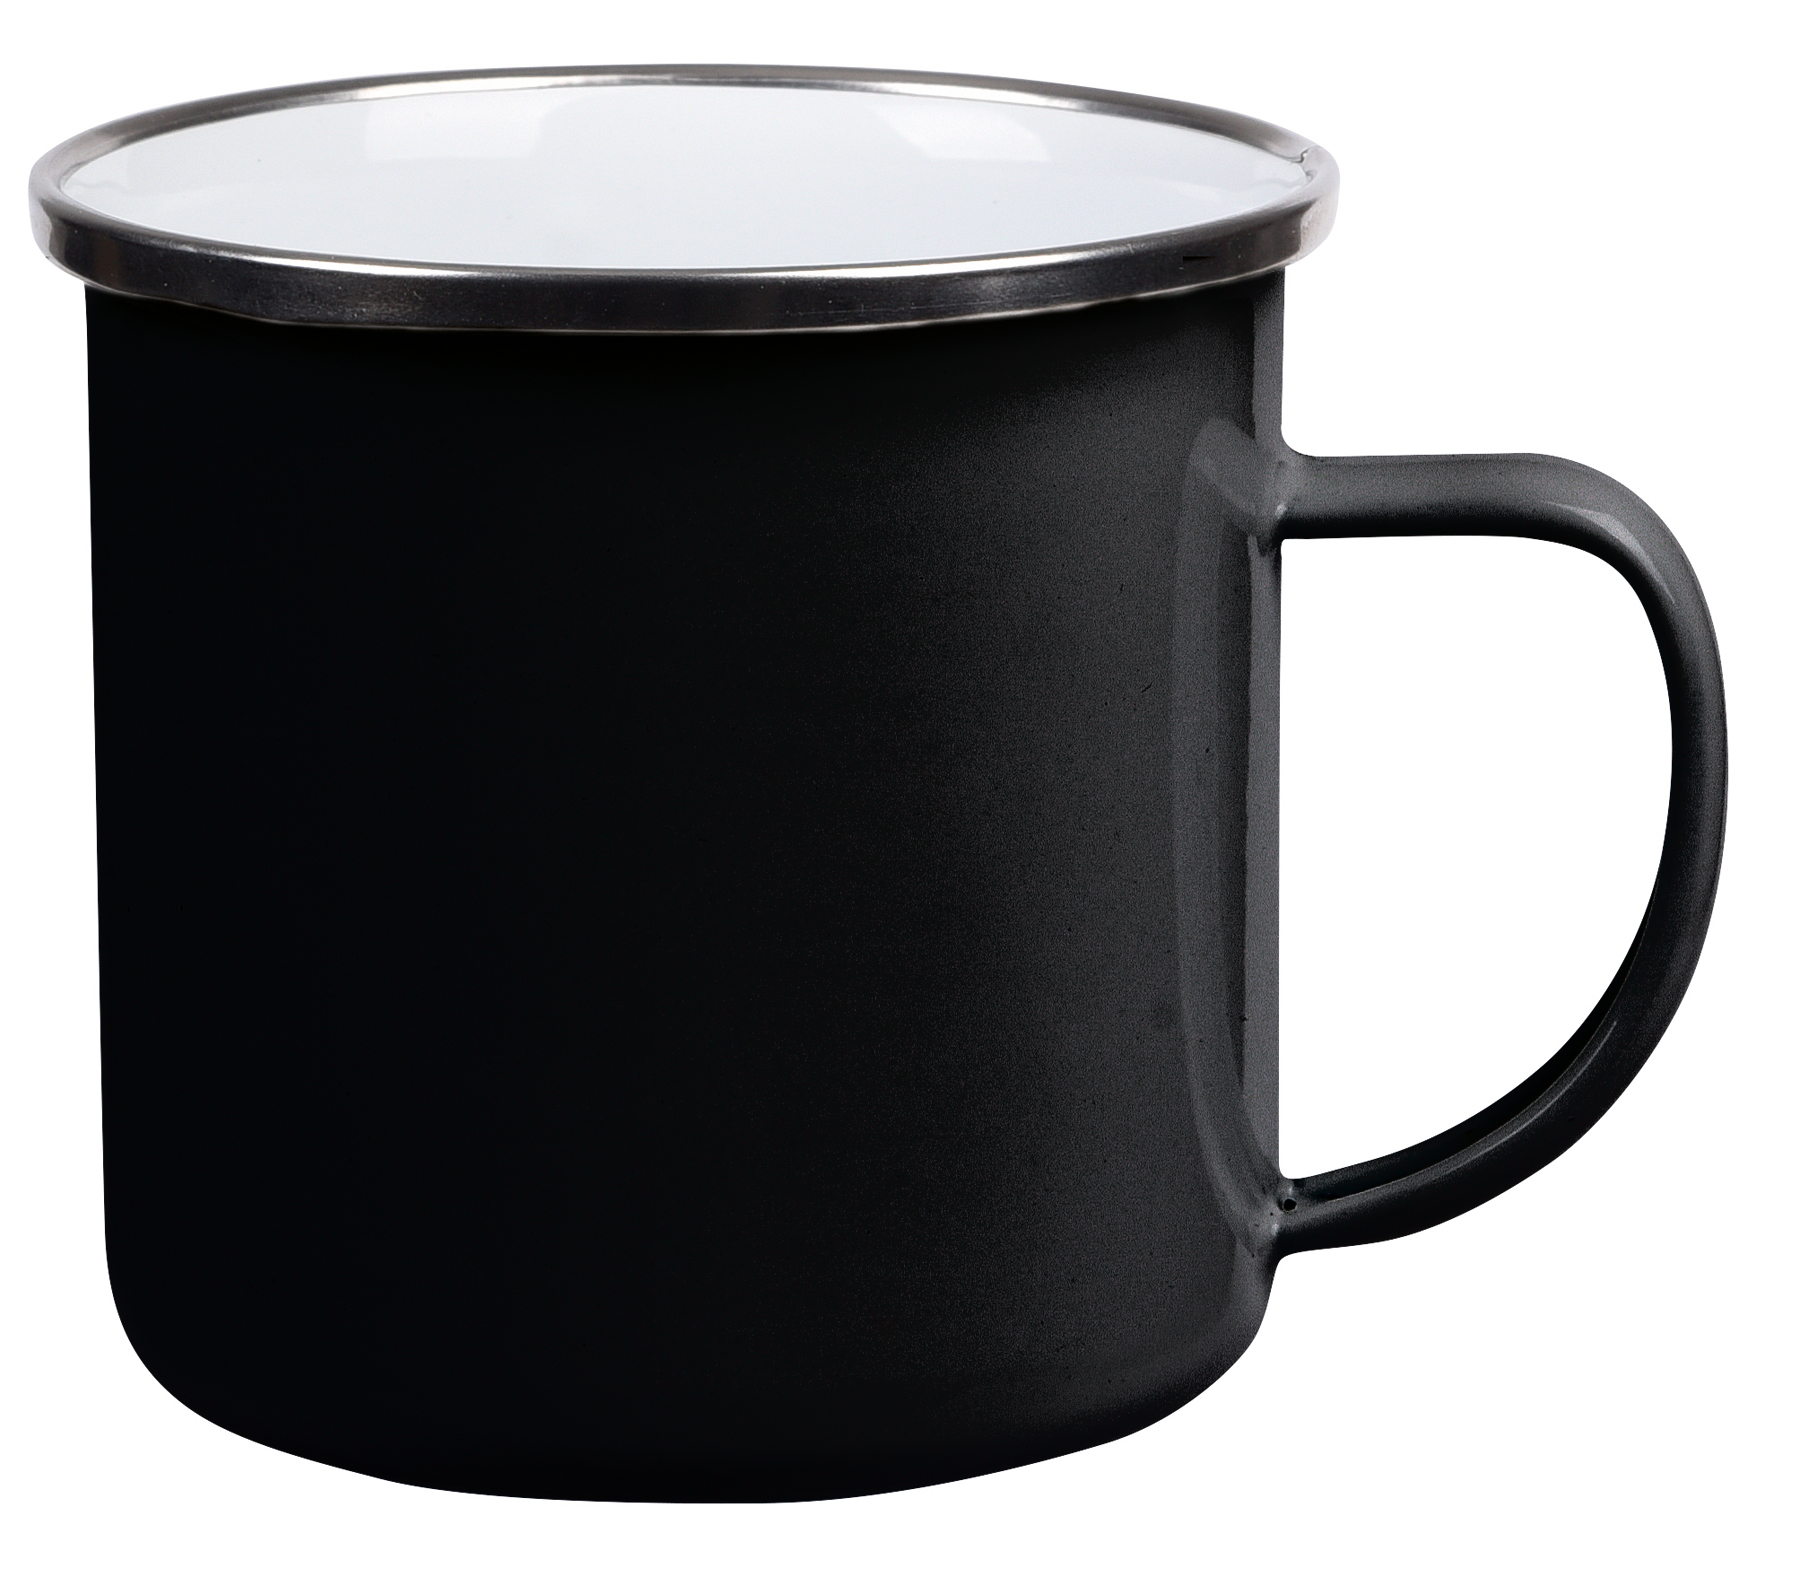 Smaltovaný nápojový hrnek VINTAGE CUP: vyroben z nerezové oceli s uchem, barvená vnější strana s bílým vnitřkem, stříbrný nerezový okraj, kapacita cca. 350 ml  - černá - foto